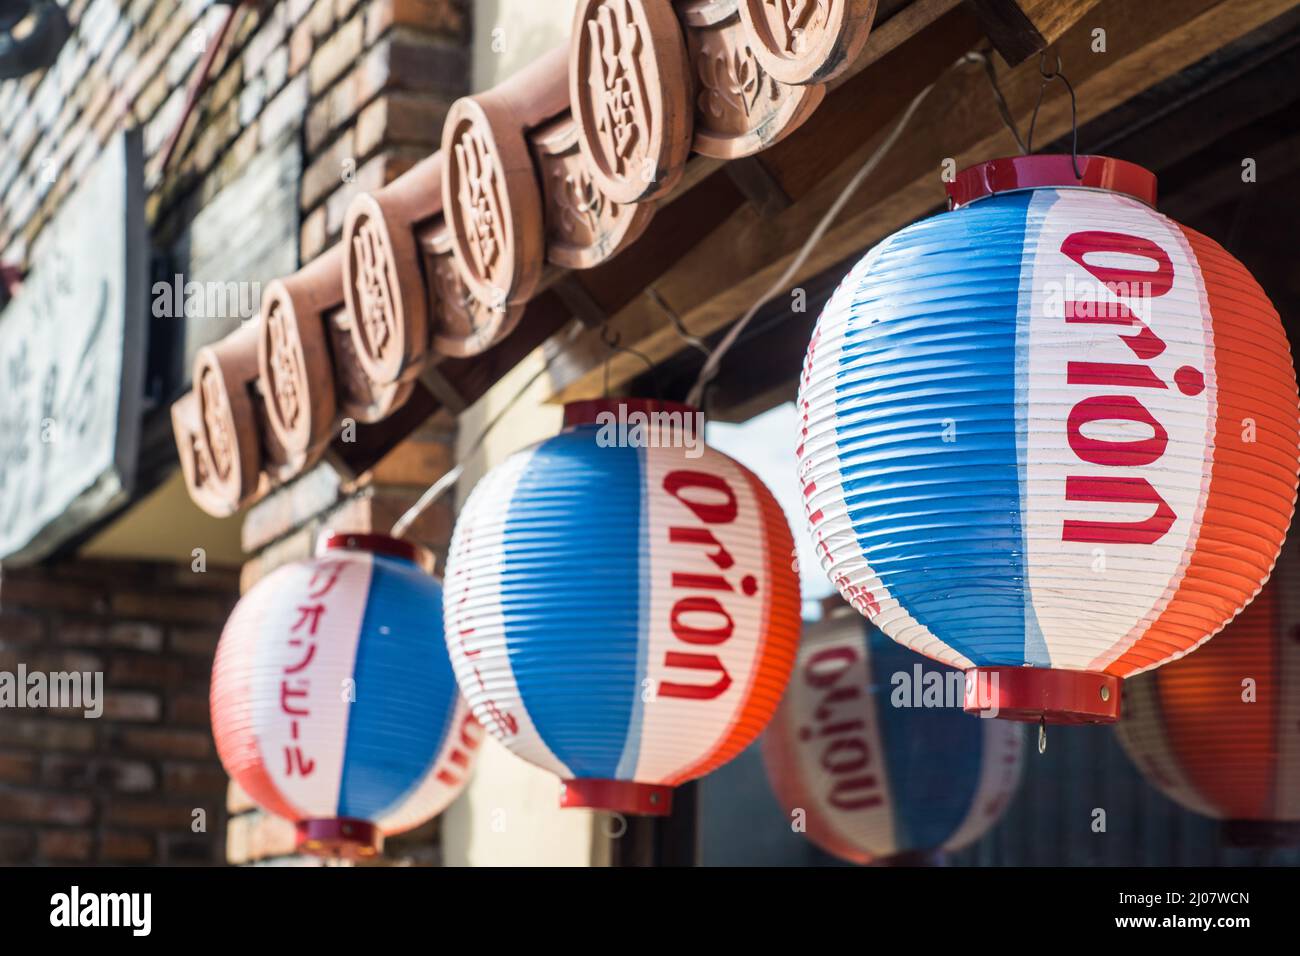 Nahaufnahme von roten, blauen und weißen hängenden Papierlaternen aus Japan, die Orion-Bier vor einem Okinawa-Restaurant in Nara, Japan, fördern Stockfoto